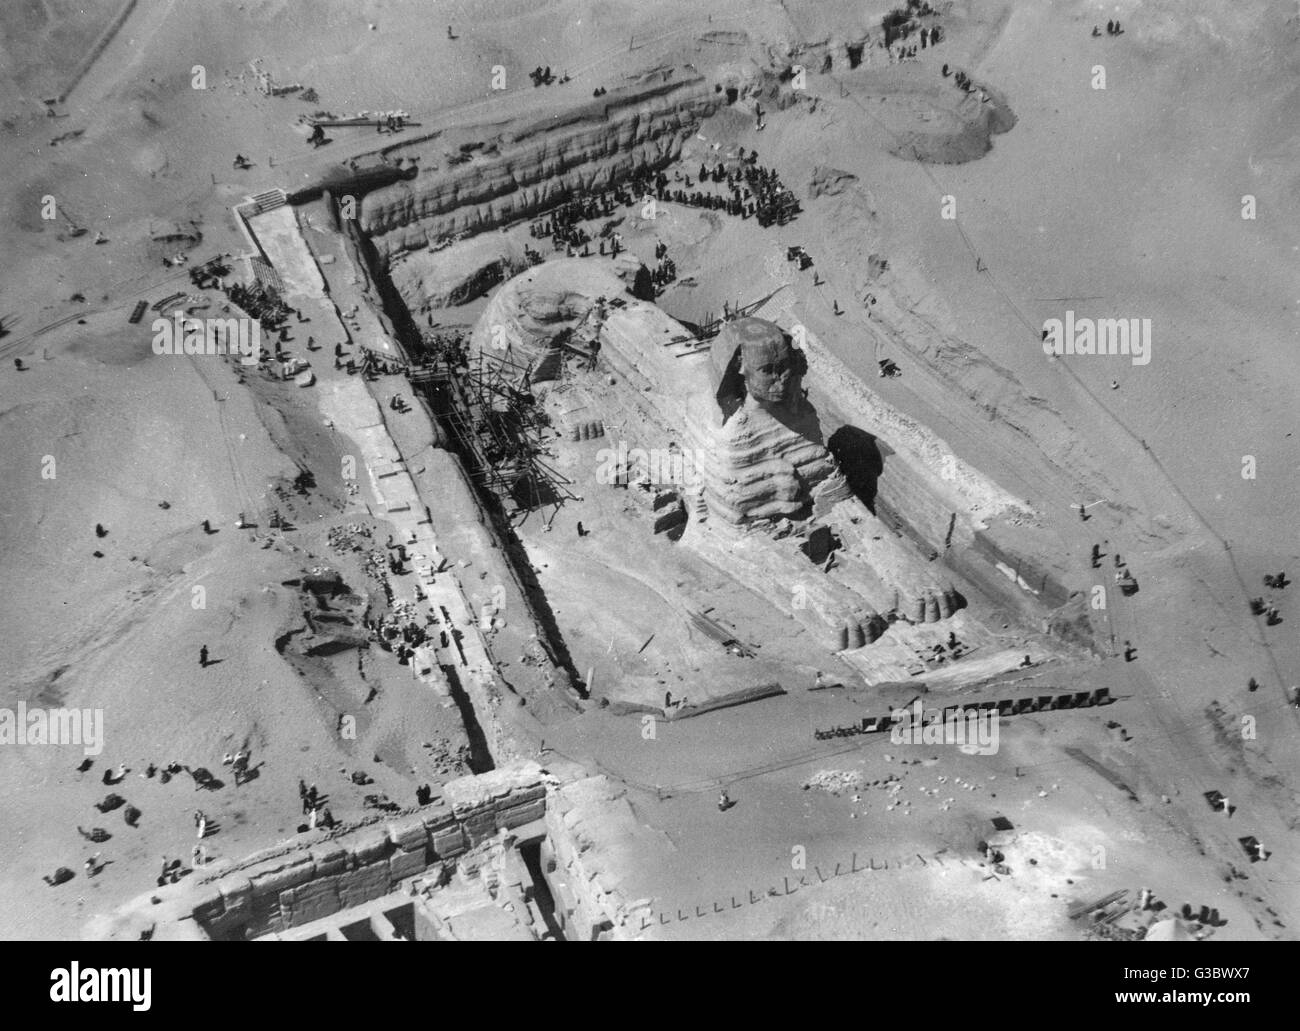 Le grand Sphinx, Giza, Egypte - photographie aérienne. Noter le site est toujours en cours d'excavation à ce stade. Date : vers 1930 Banque D'Images